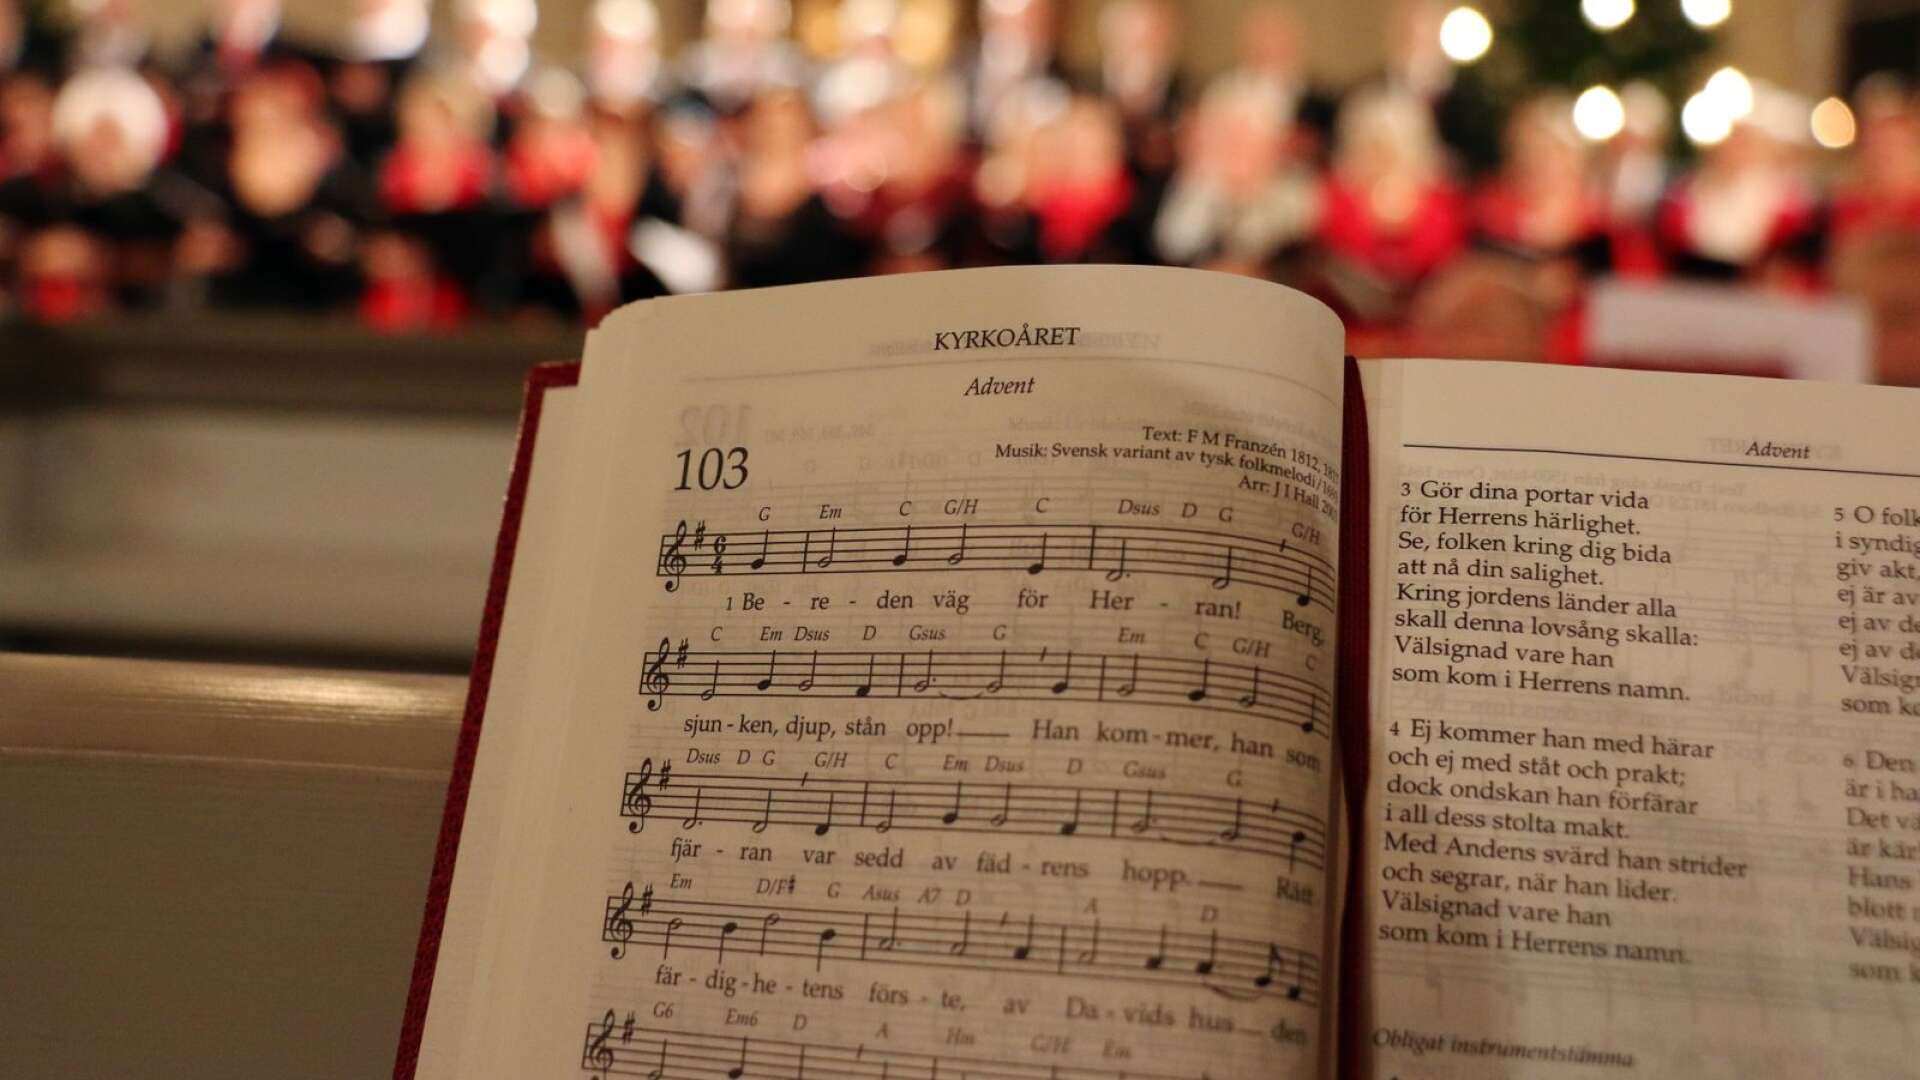 Kyrkans musik är fylld av traditioner, men bland psalmbokens cirka 800 psalmer finns både omtyckta och mycket sällan sjungna verk. Nu ska en ny psalmbok tas fram.